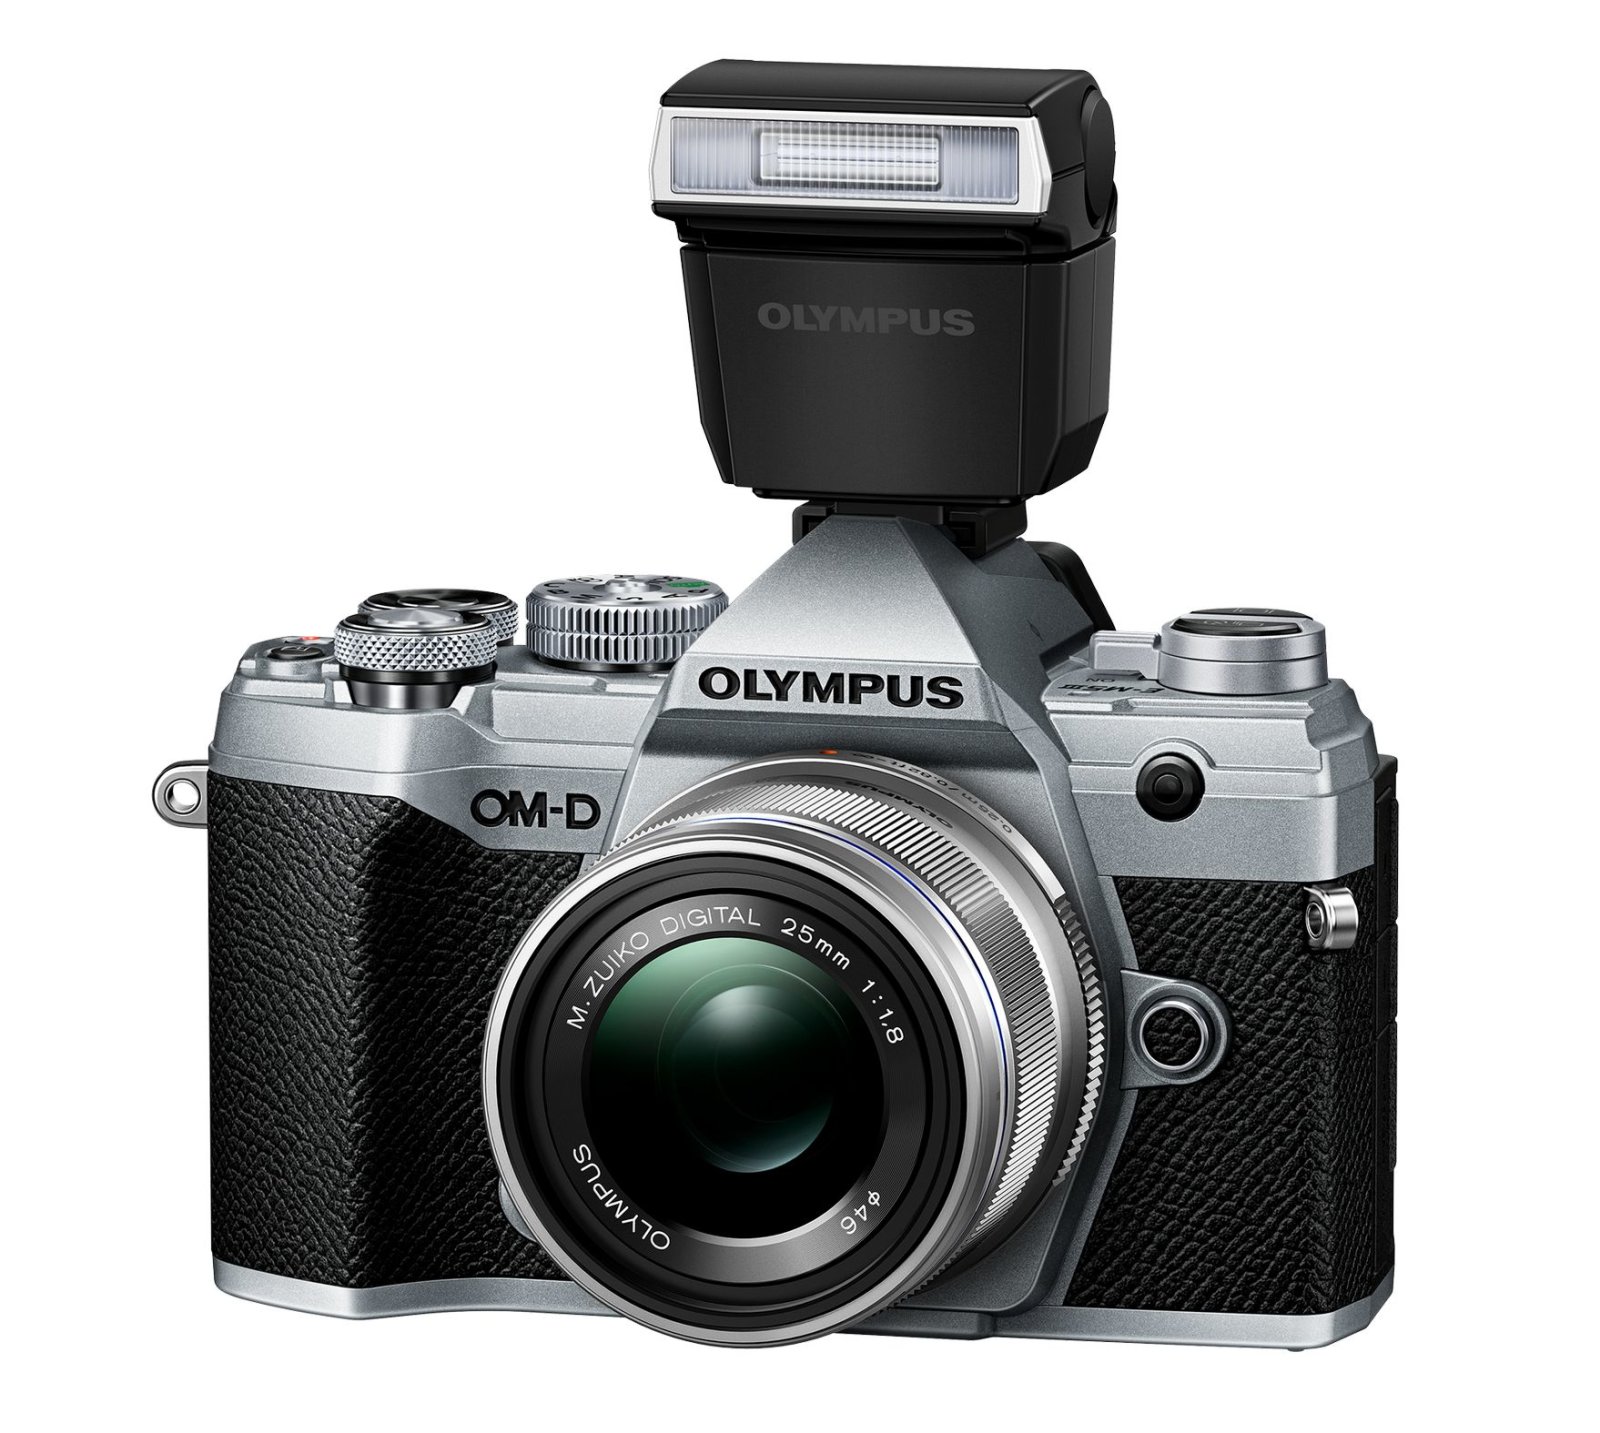 Olympus ra mắt máy ảnh OM-D E-M5 Mark III với thiết kế nhỏ gọn và tốc độ chụp nhanh